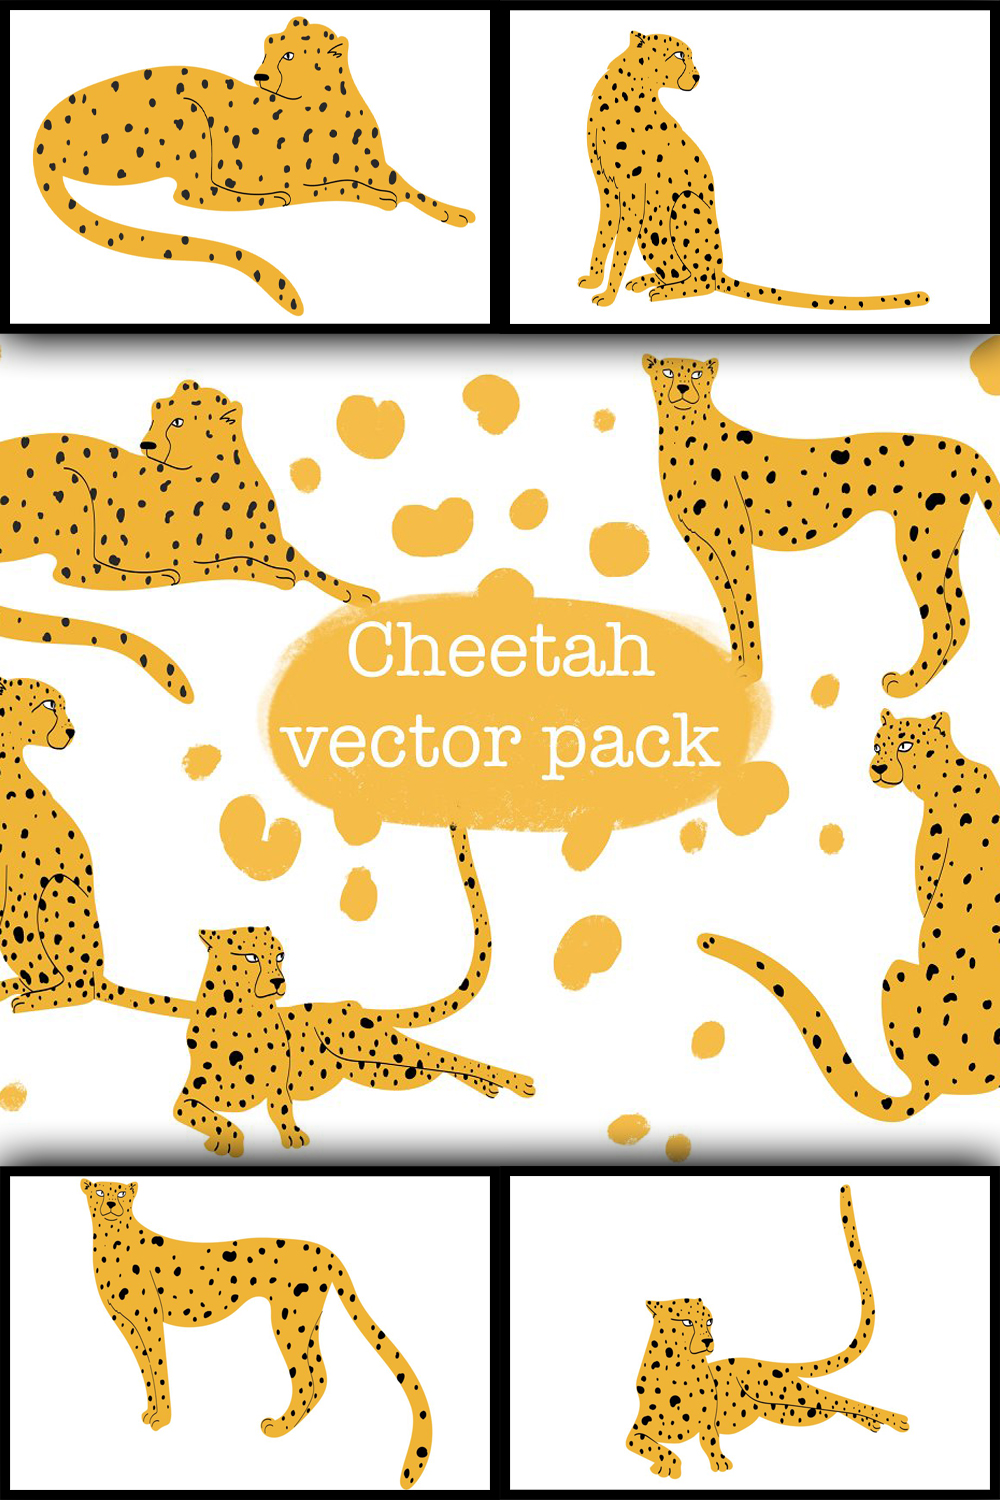 6002699 cheetah vector pack pinterest 1000 1500 170